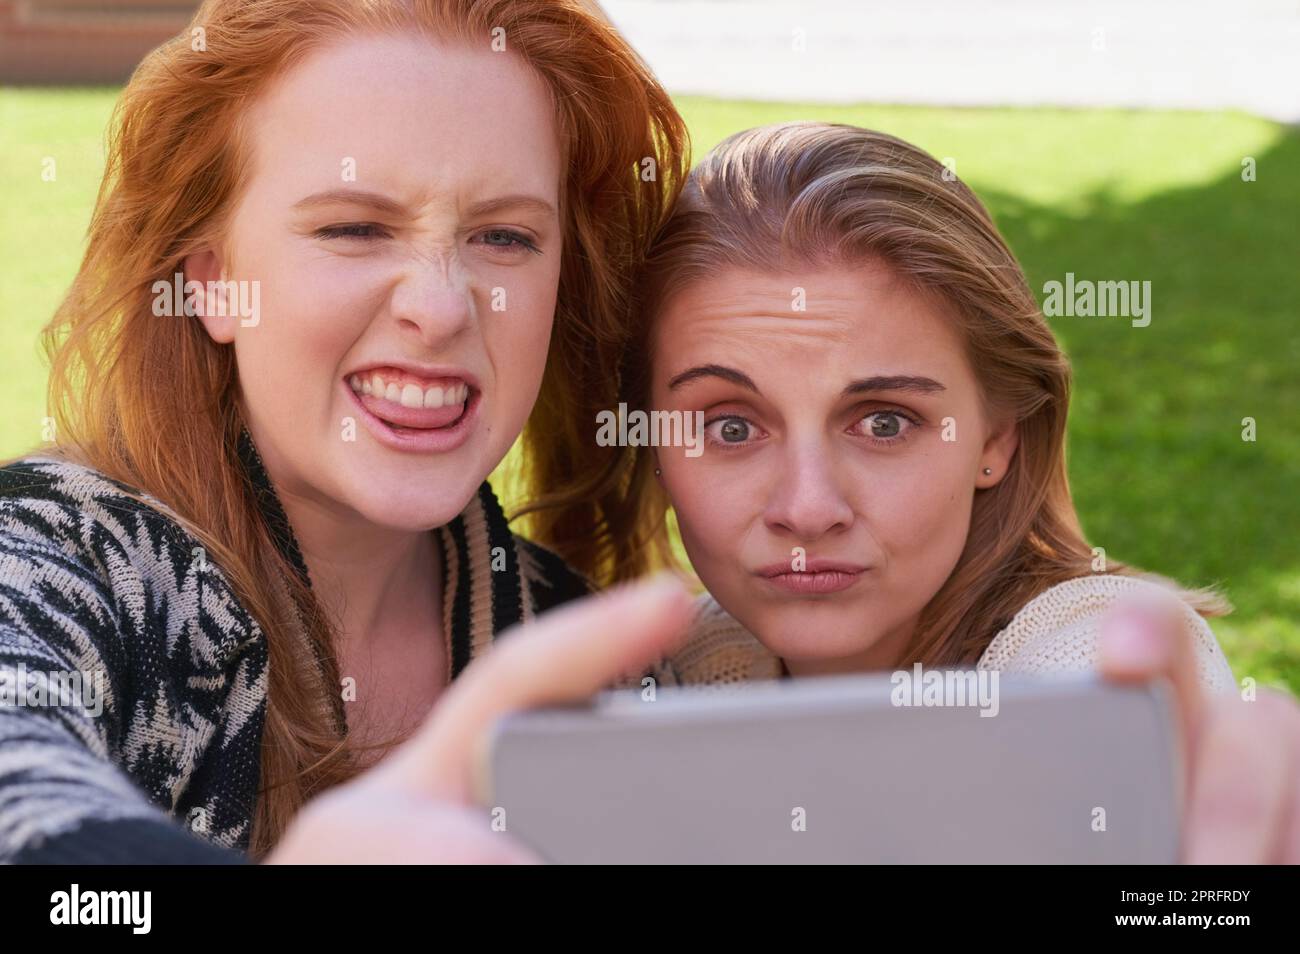 Les meilleurs amis sont des gens qui sont votre genre de fou. Deux jeunes amis prenant un selfie avec un téléphone. Banque D'Images